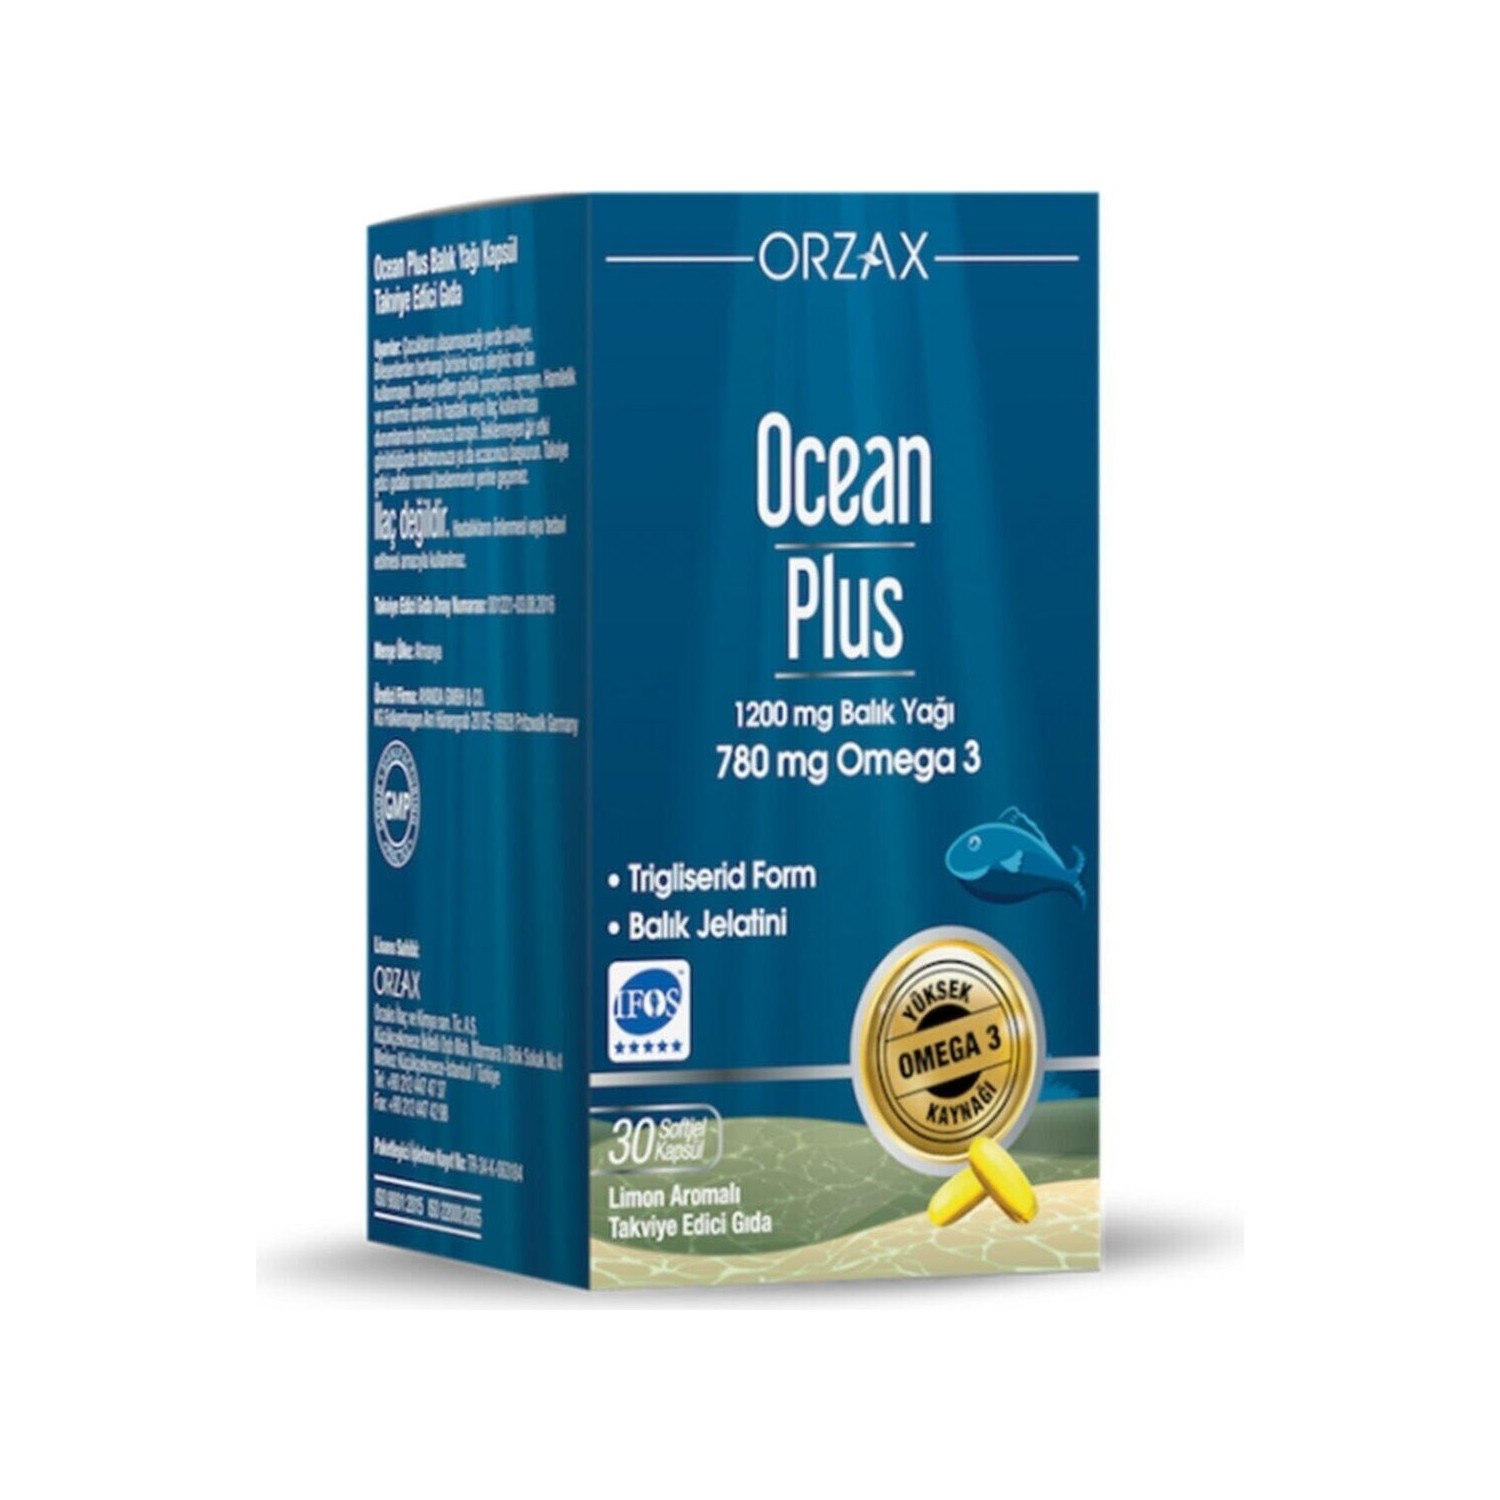 Омега-3 Plus Orzax Ocean 1200 мг, 30 капсул nature s bounty рыбий жир двойная упаковка 1200 мг 180 капсул с быстрым высвобождением